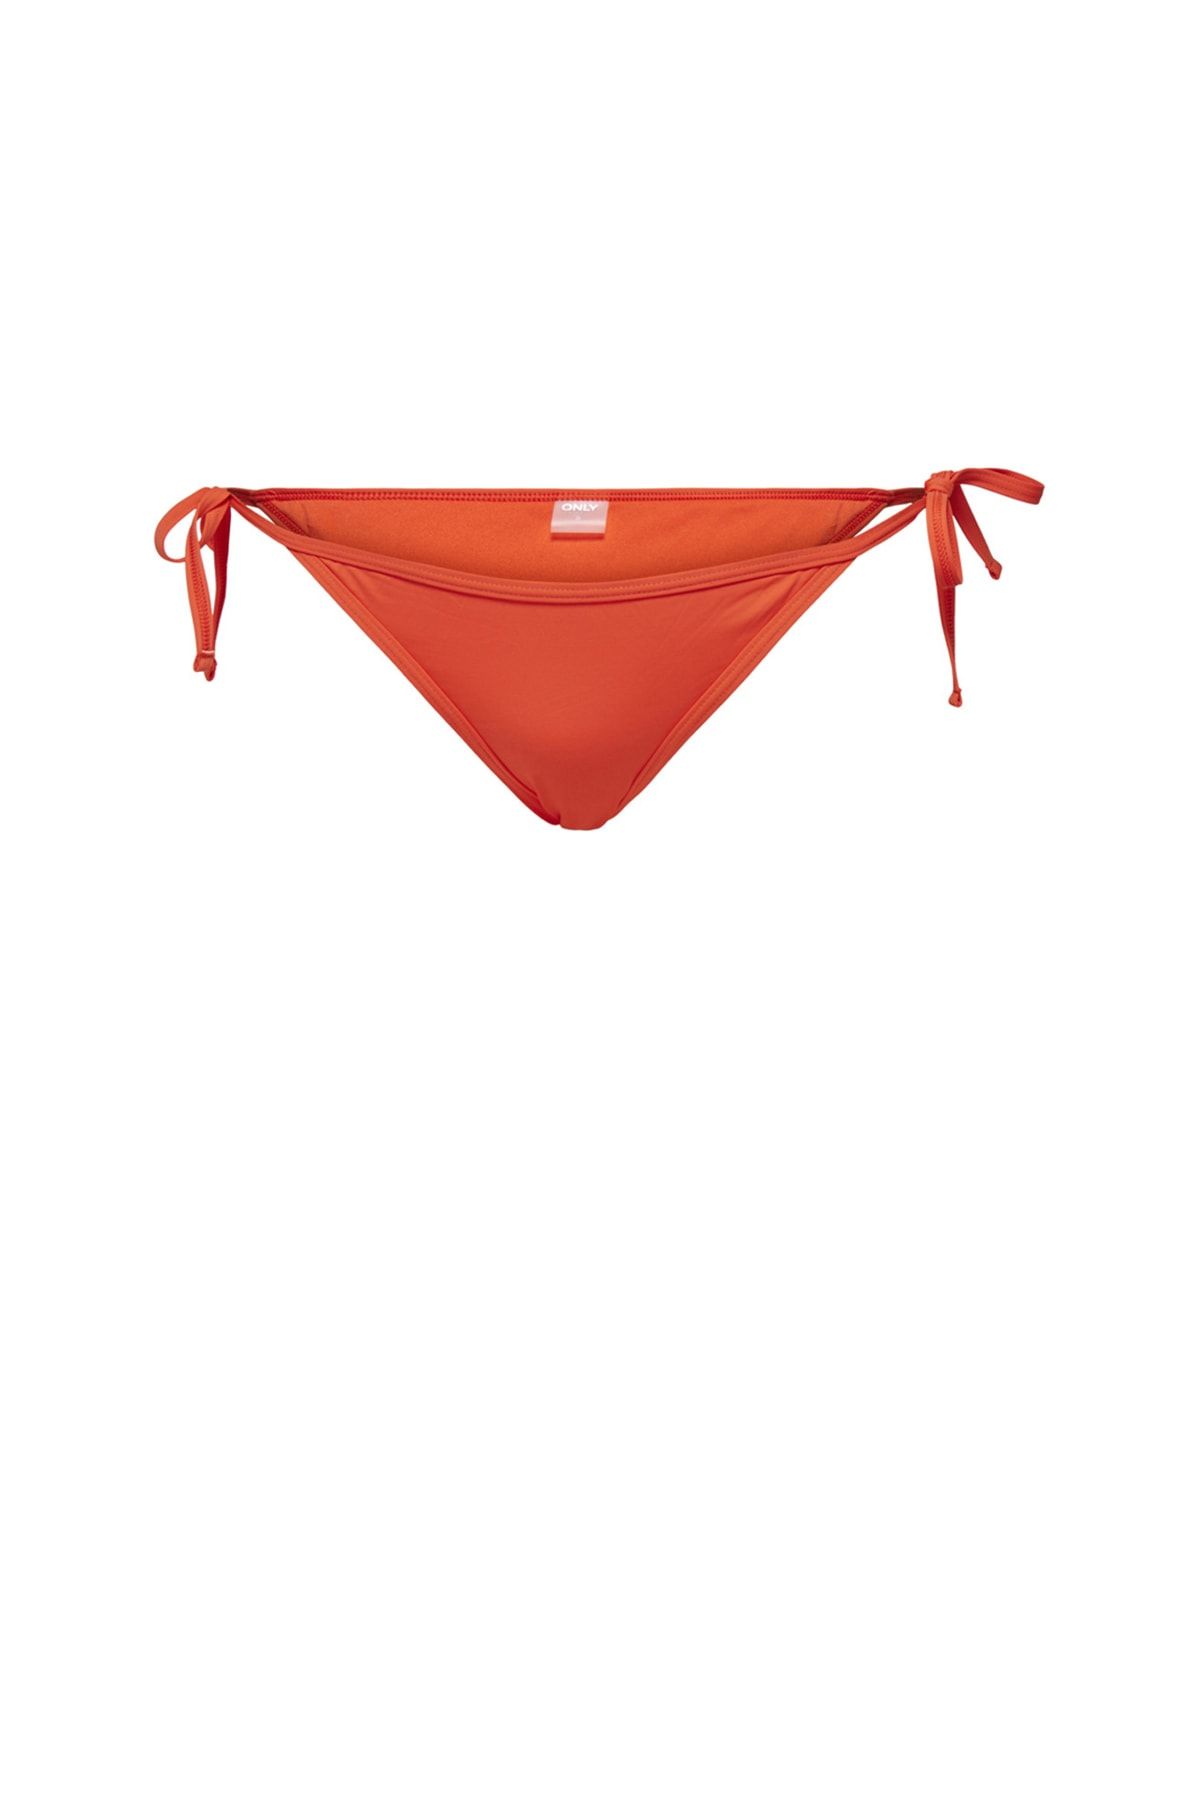 Only Açık Kırmızı Kadın Bikini Alt 1526646017-1563 Tcx